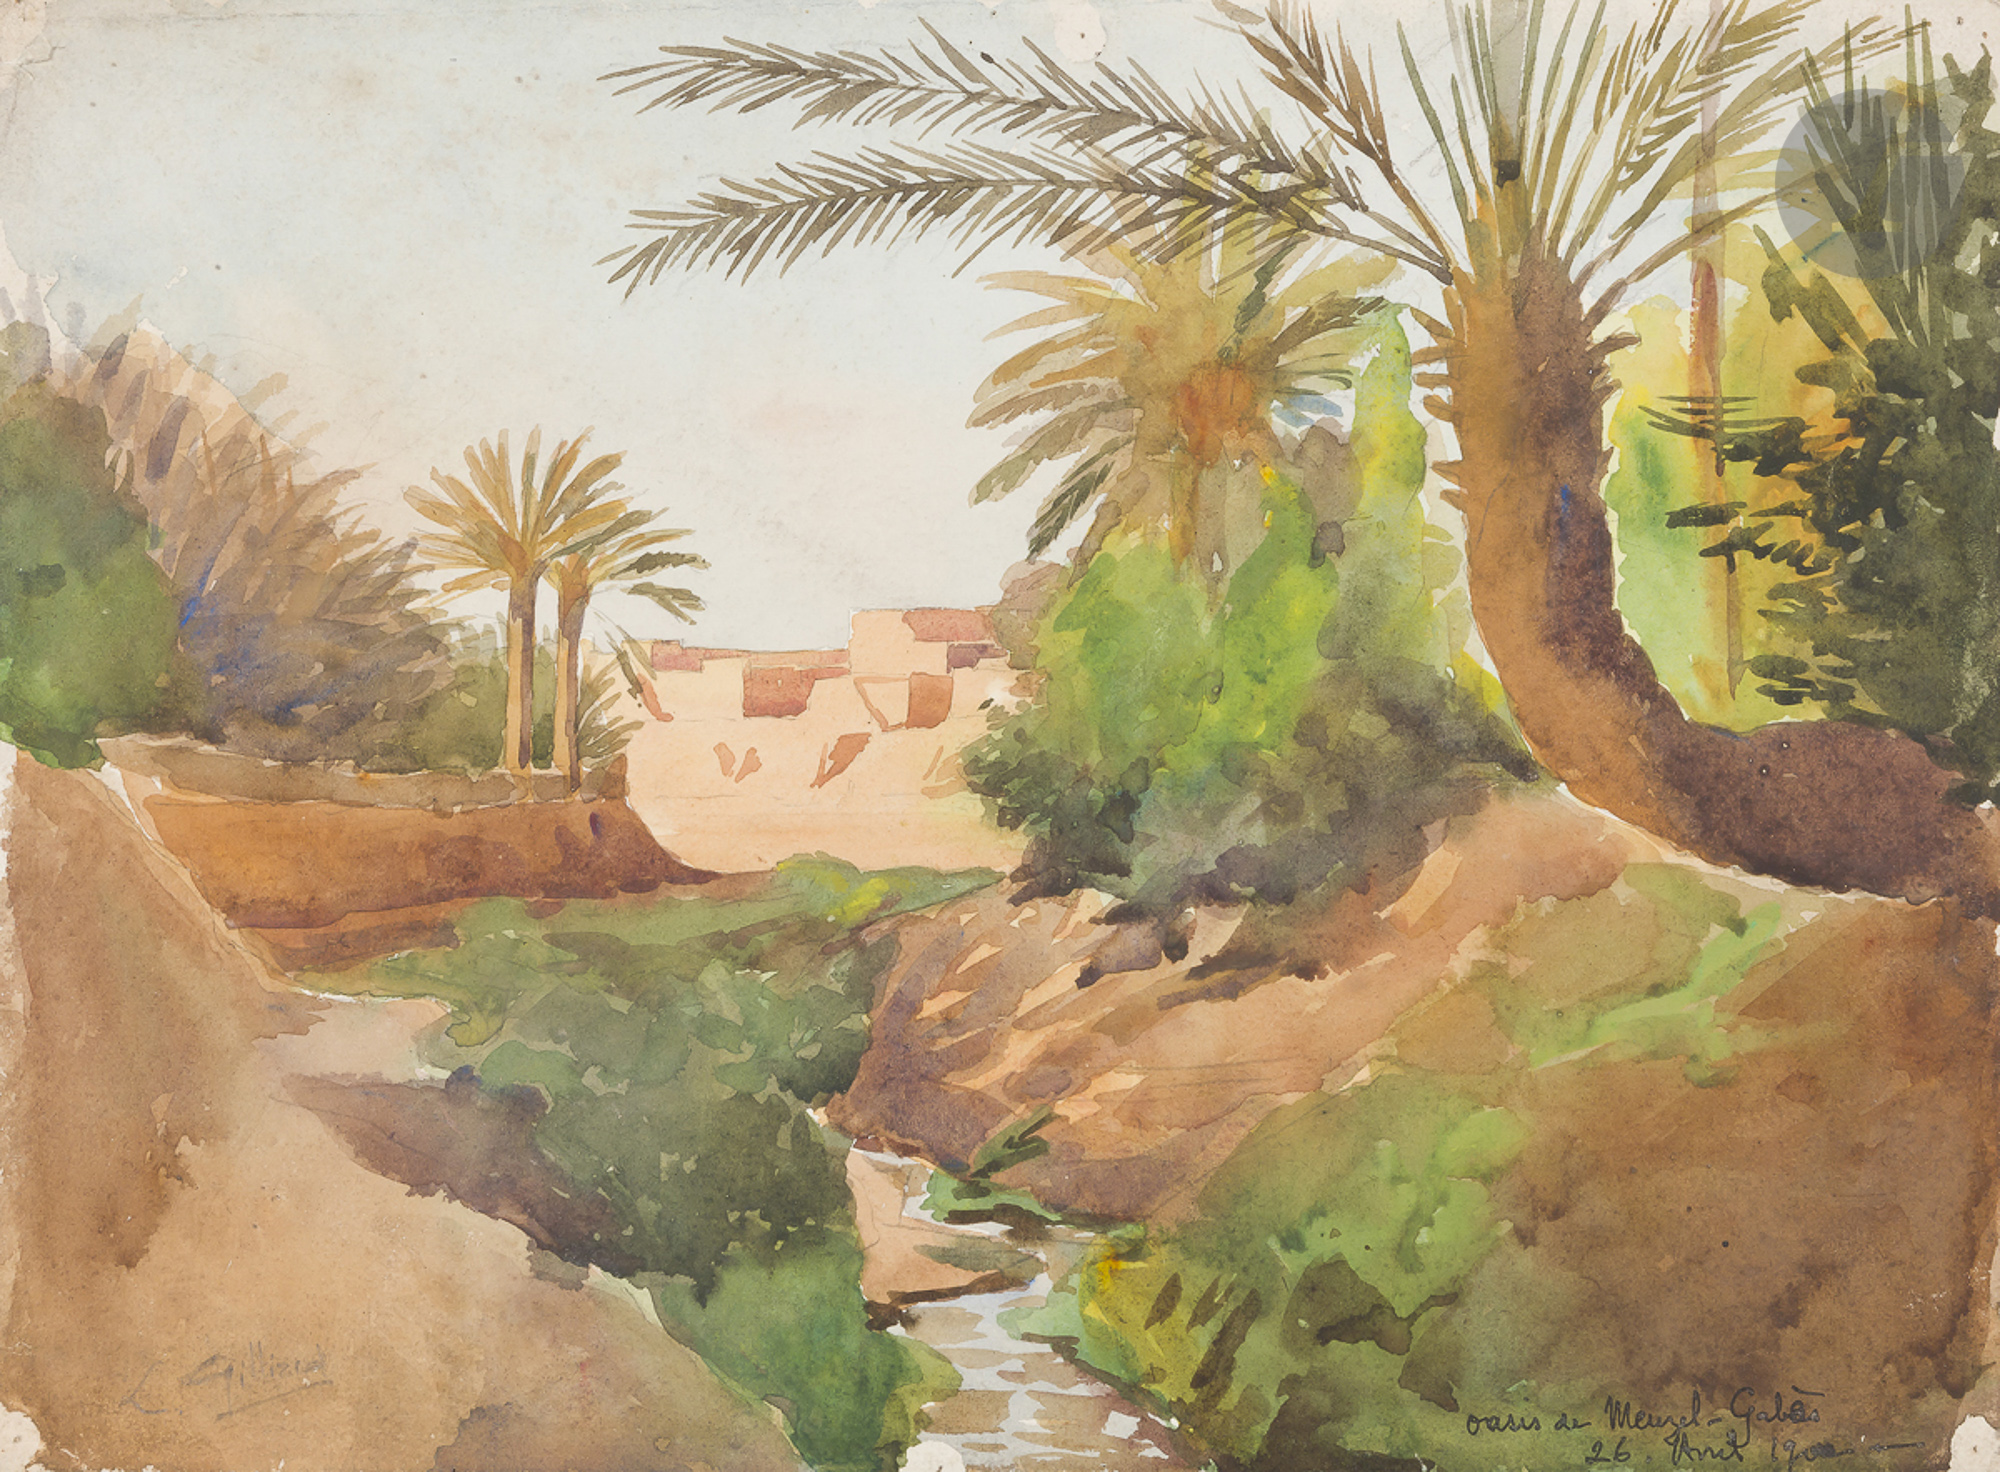 GILLIARD Oasis de Meuzel Gabès, 1902 2 aquarelles. Signées, datées et annotées. 25 x 34 cm et 16 x - Image 2 of 2